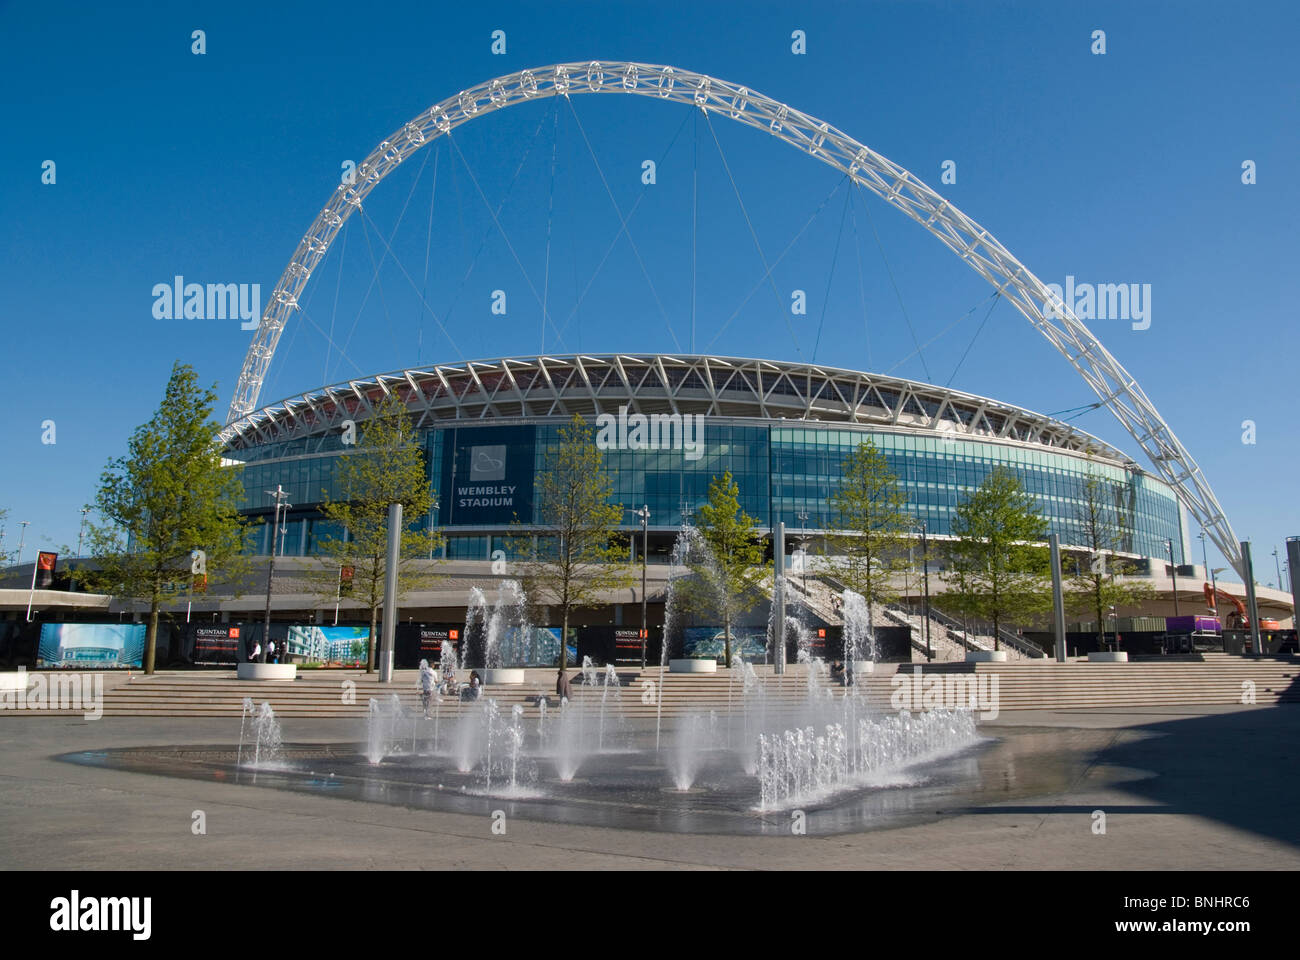 Europa Reino Unido Inglaterra Londres Wembley Stadium el estadio deportivo de fútbol nueva construcción innovadora arquitectura ARCO ARCO TECHO ESCAMOTEABLE Foto de stock